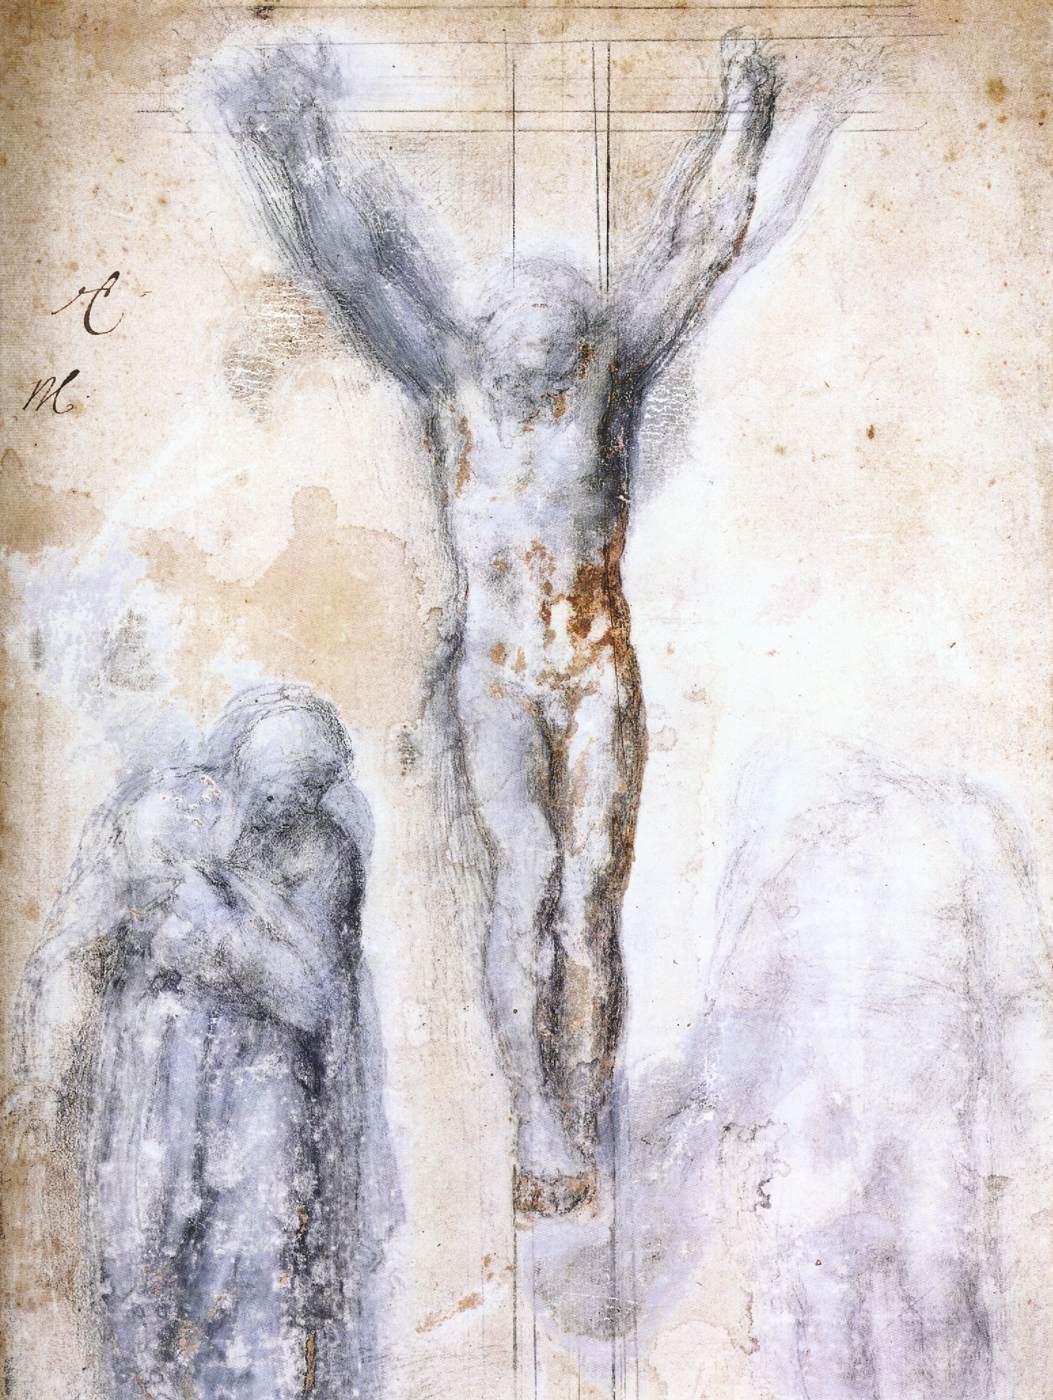 Miguel Angel Buonarroti, Estudio para un Cristo crucificado con María y san Juan, 1560, tiza negra, realces en blanco y pluma, 433 x 290 mm.